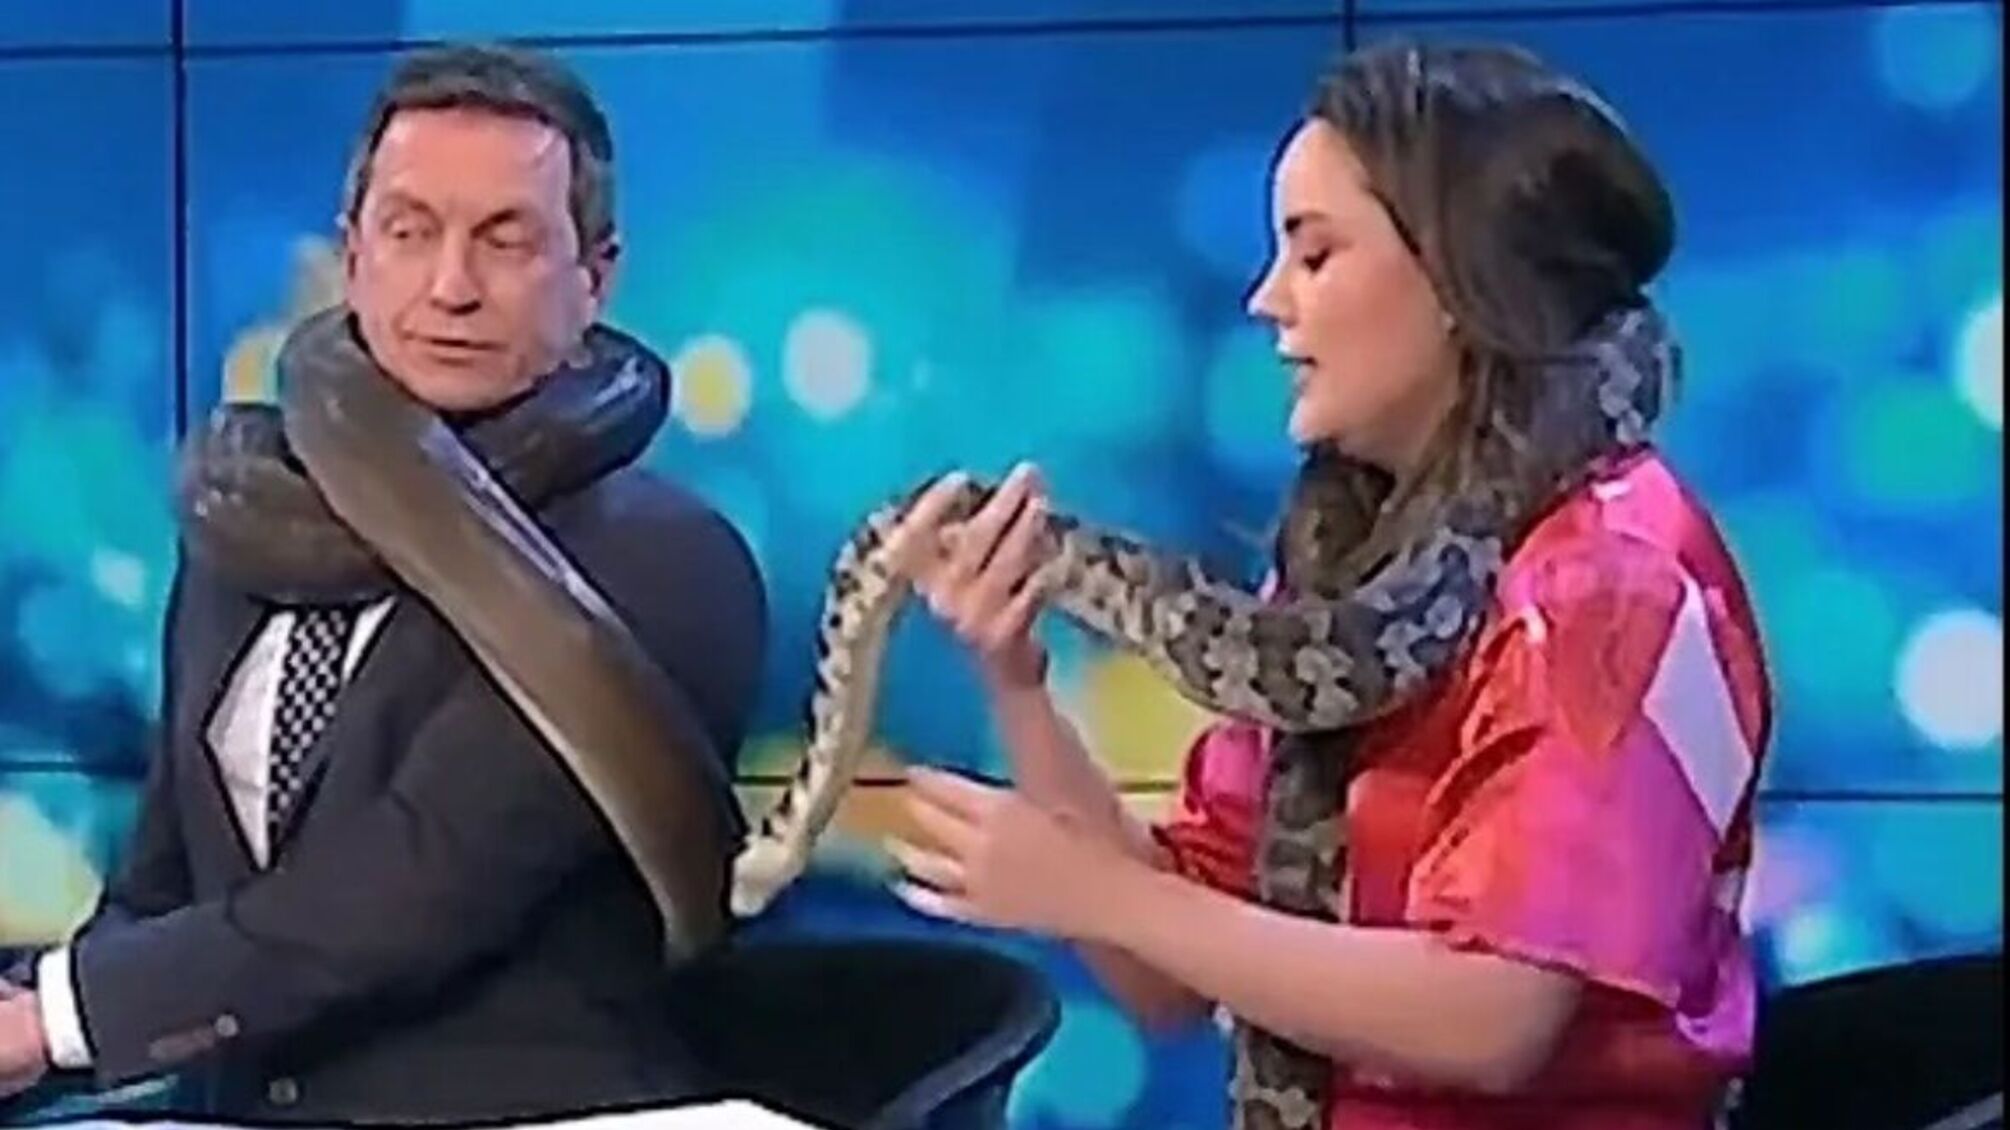 Змея чуть не задушила телезвезду Австралии в прямом эфире(видео)